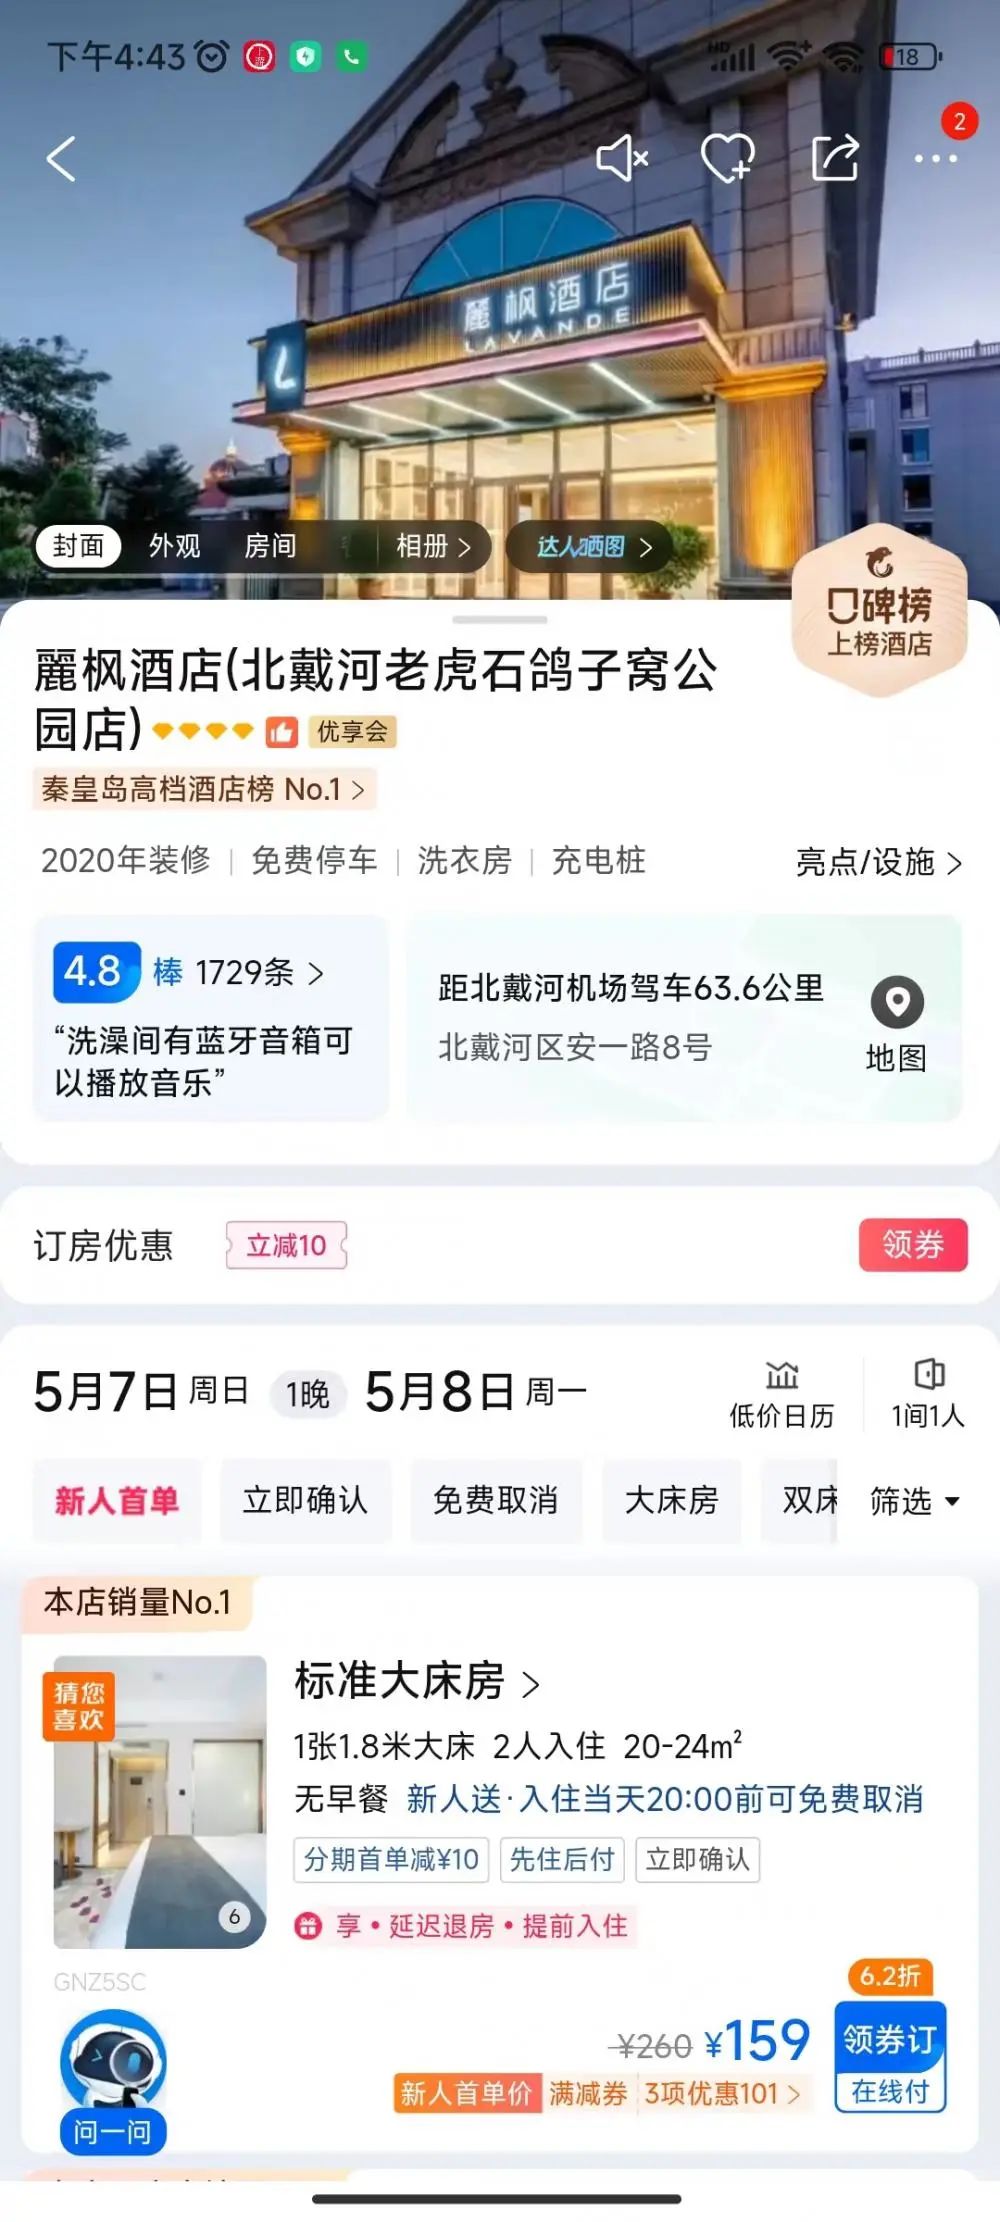 秦皇岛麗枫酒店相同房型5月7日价格回落至159元。